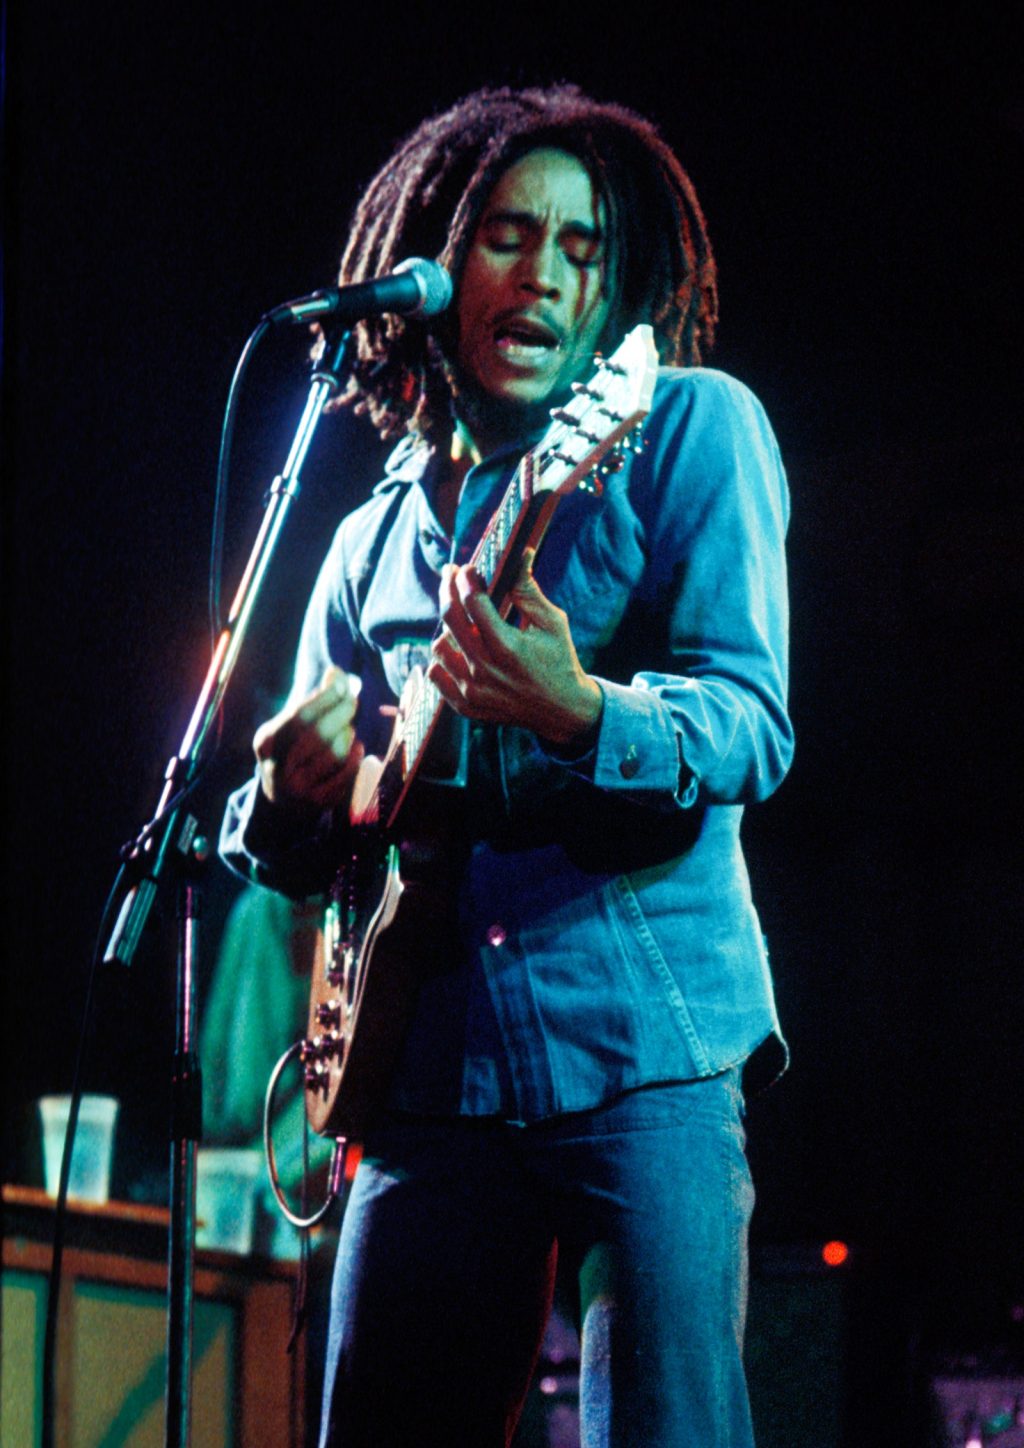 “Bob Marley: One love”. Come parlare di Reggae oggi giorno?